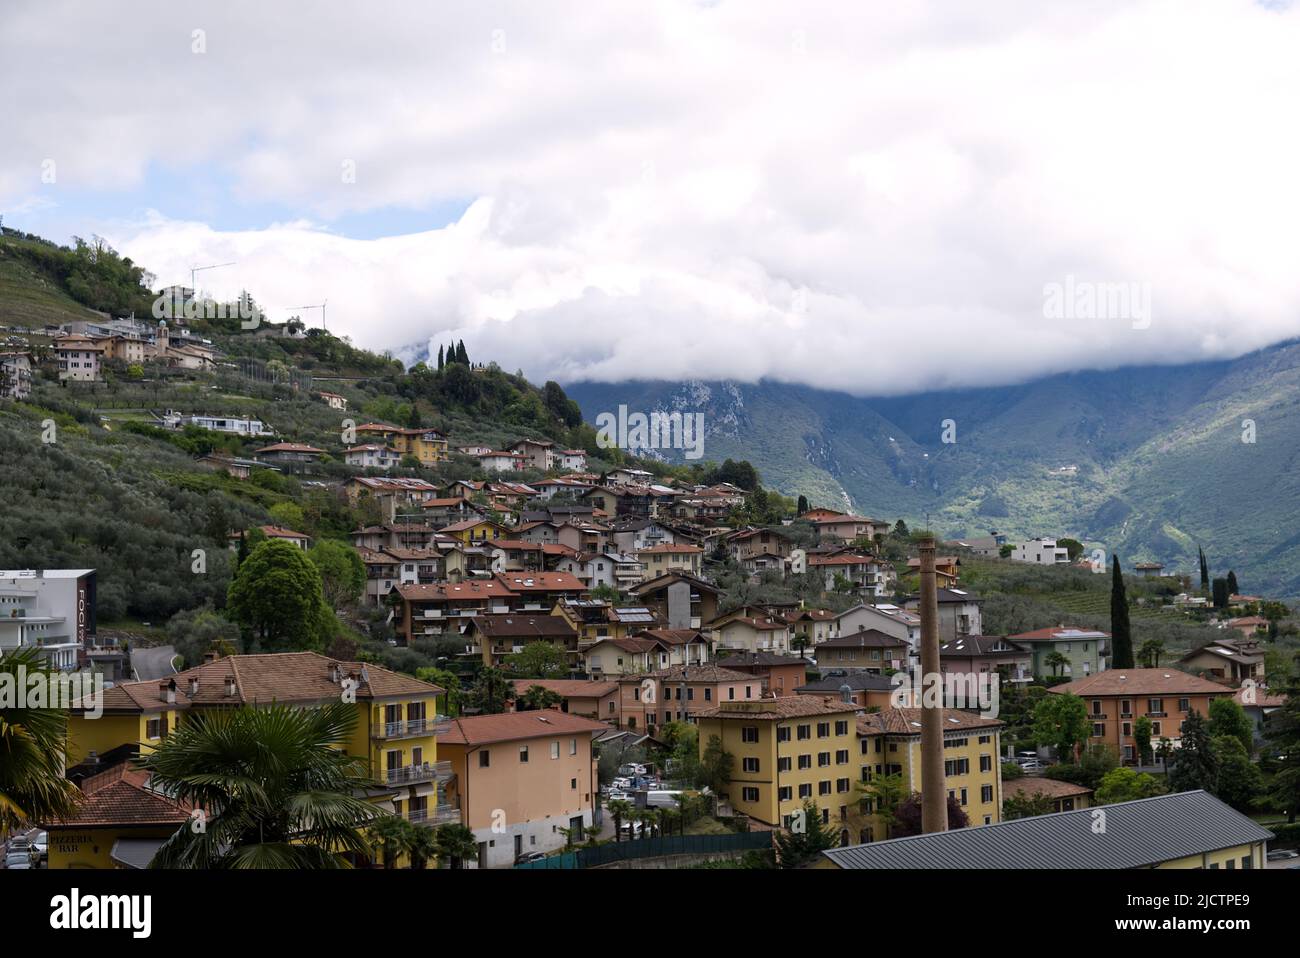 Italia: Panorama di un paese sul Lago di Garda con le cime delle Alpi coperte da nuvole Foto Stock